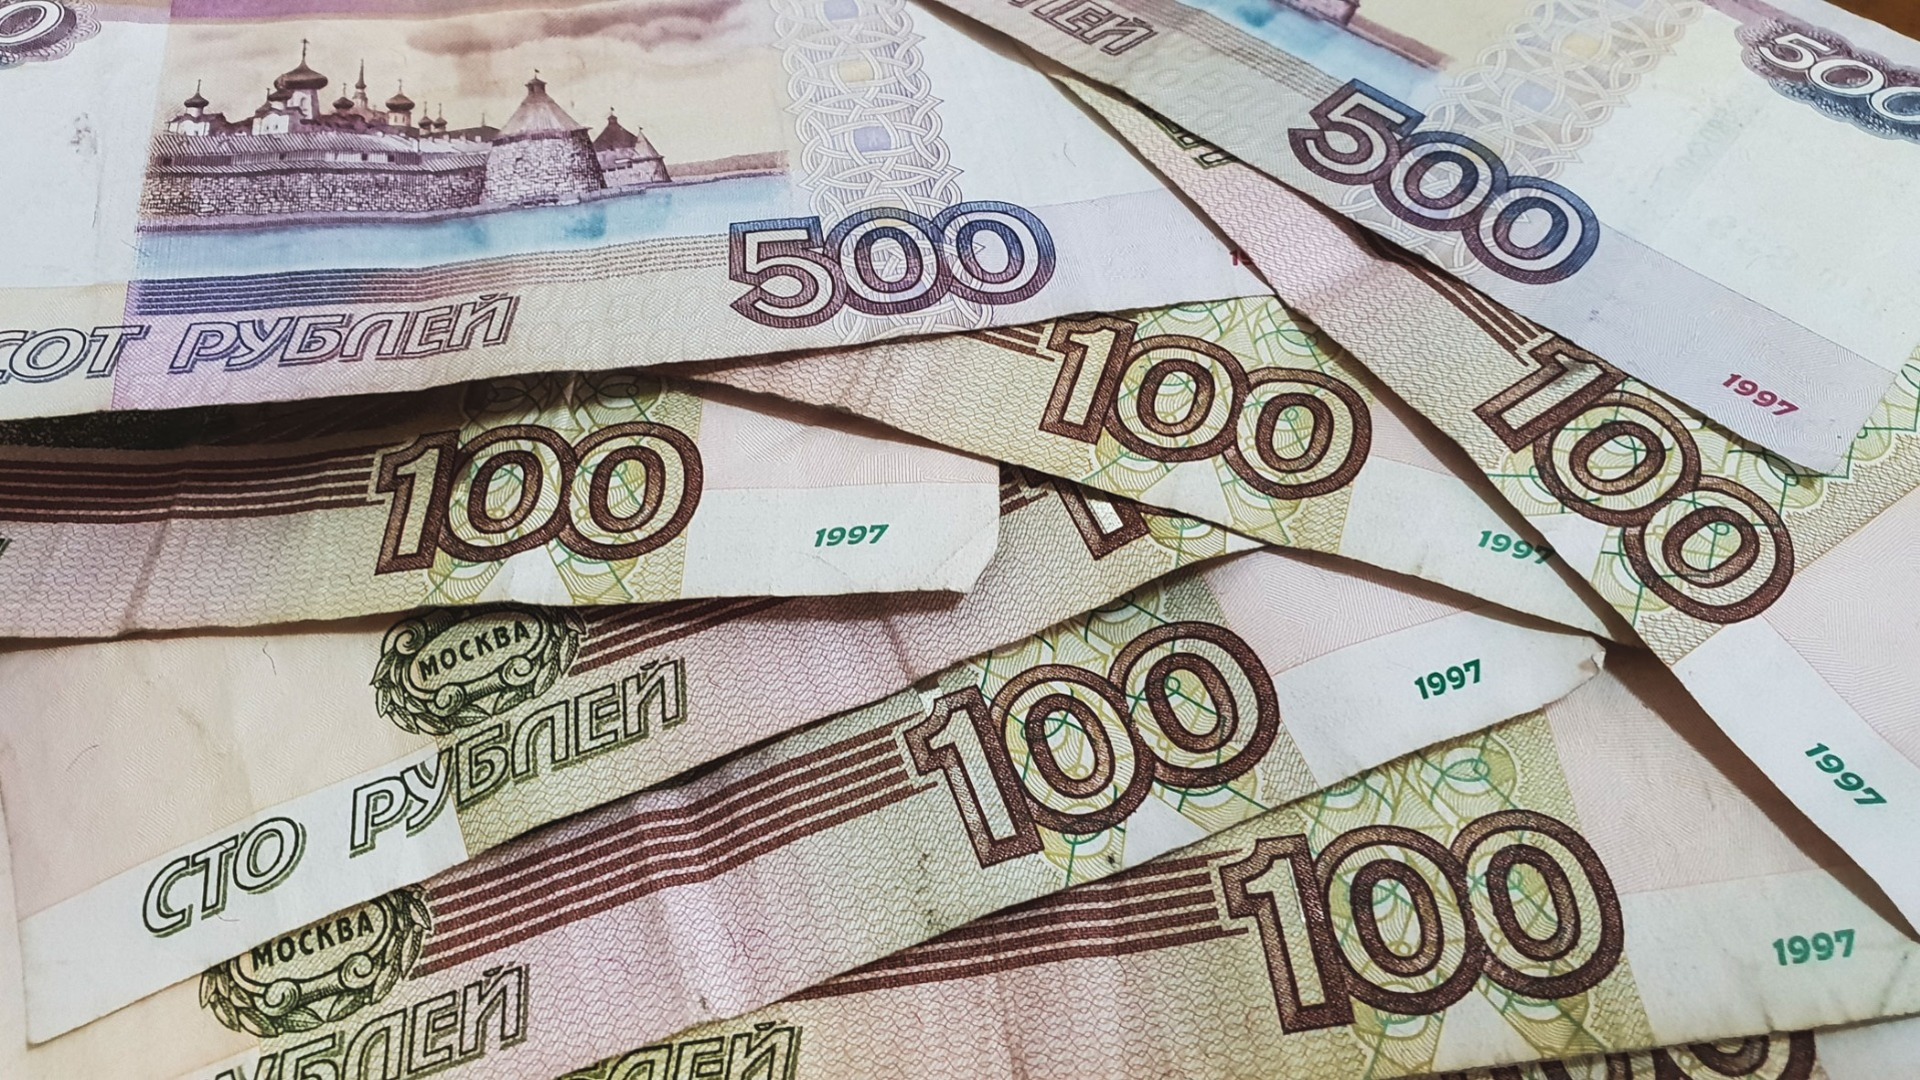 Картель на 85 млн рублей выявлен УФАС в Свердловской области